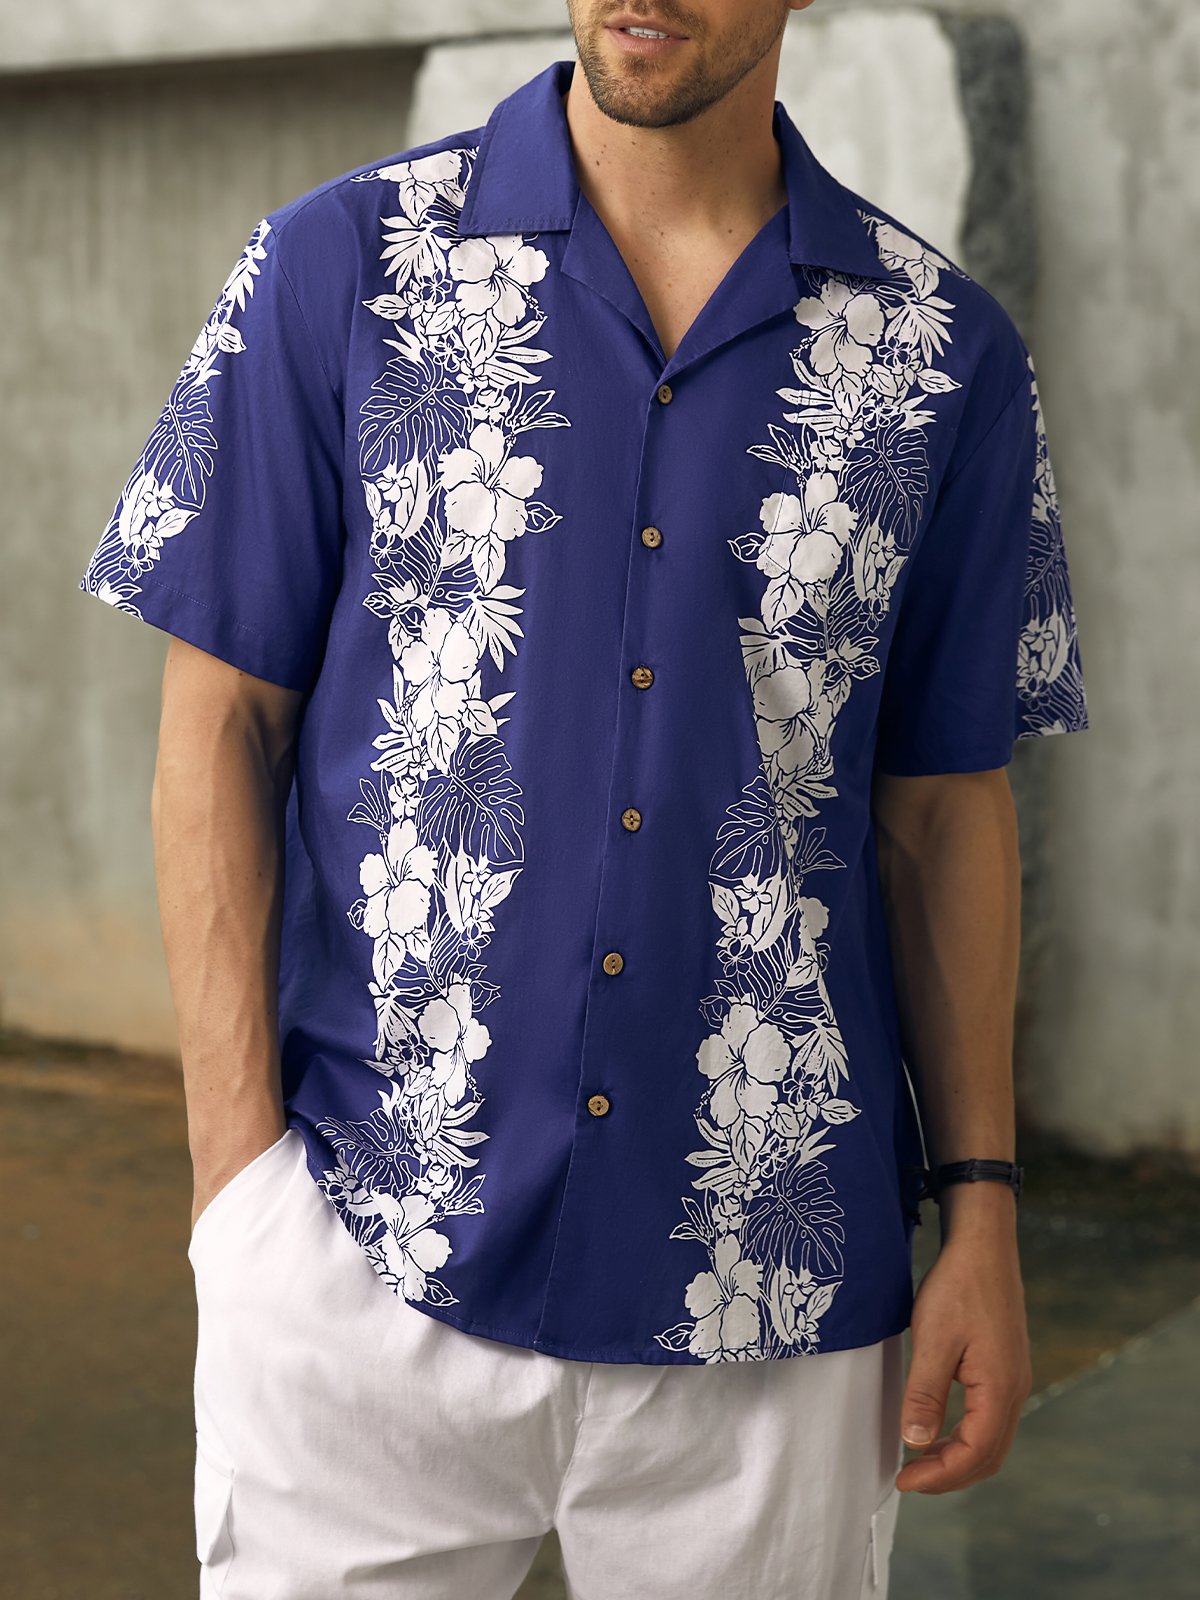 Hardaddy® Cotton Floral Guayabera Shirt